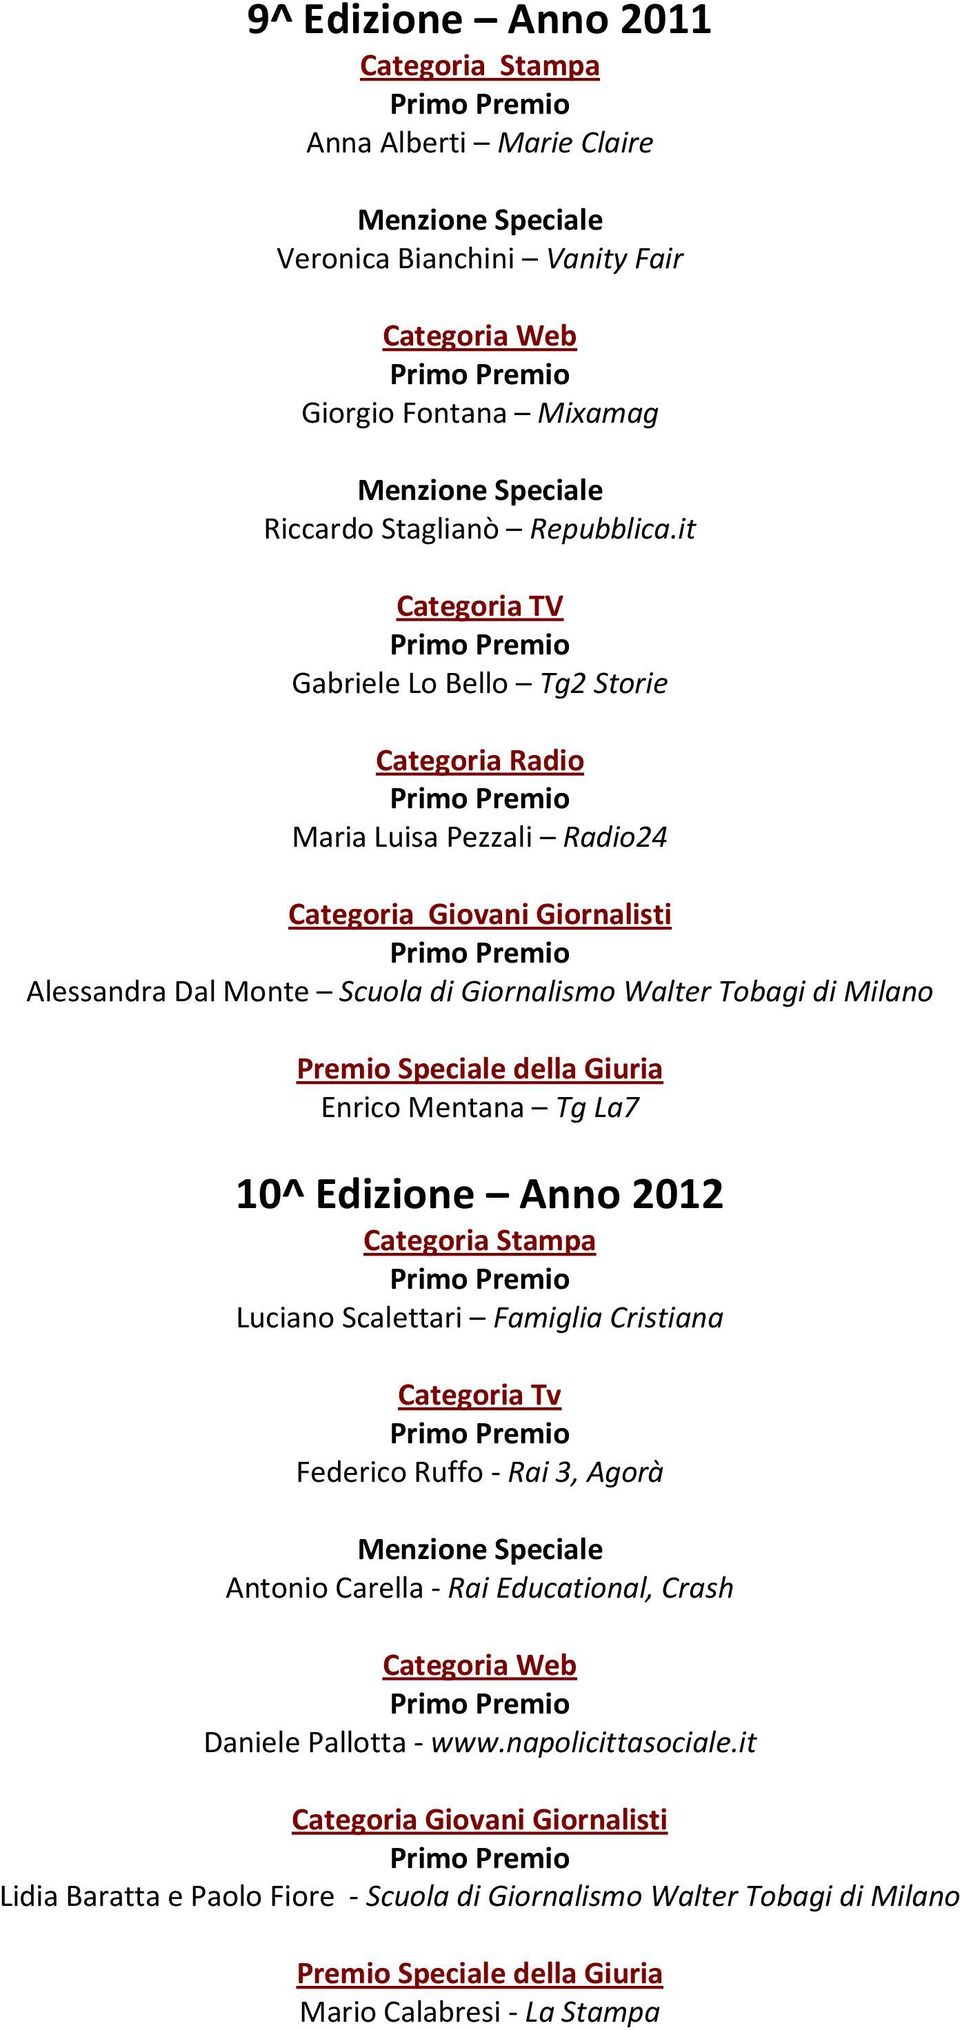 Enrico Mentana Tg La7 10^ Edizione Anno 2012 Categoria Stampa Luciano Scalettari Famiglia Cristiana Categoria Tv Federico Ruffo - Rai 3, Agorà Antonio Carella